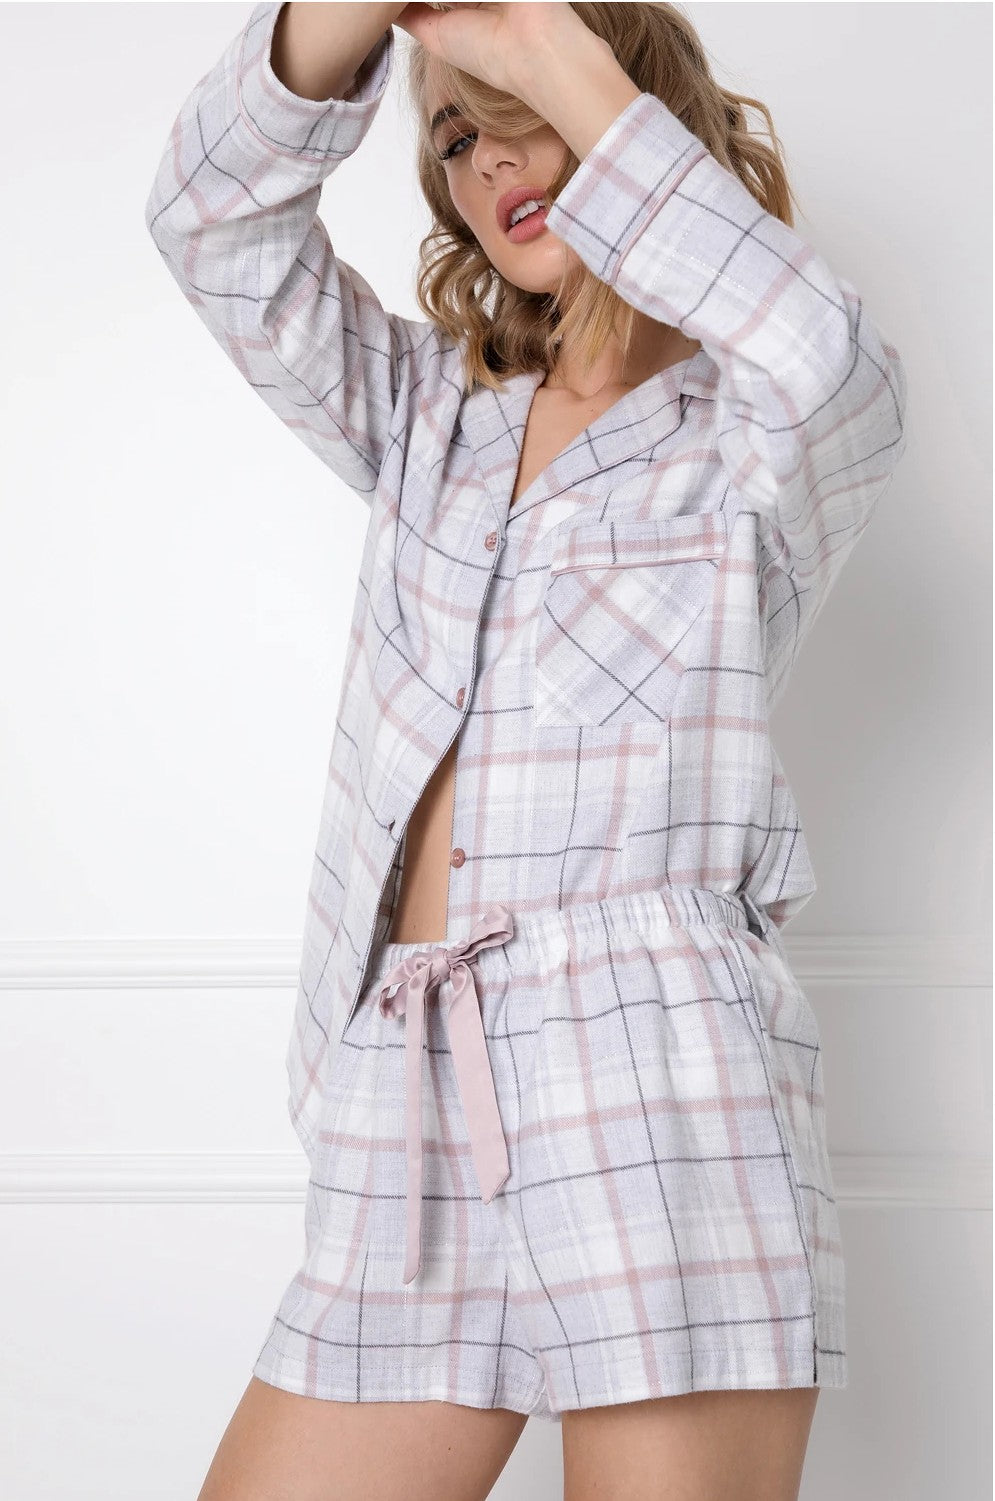 Weicher und warmer geknöpfter Damen Pyjama